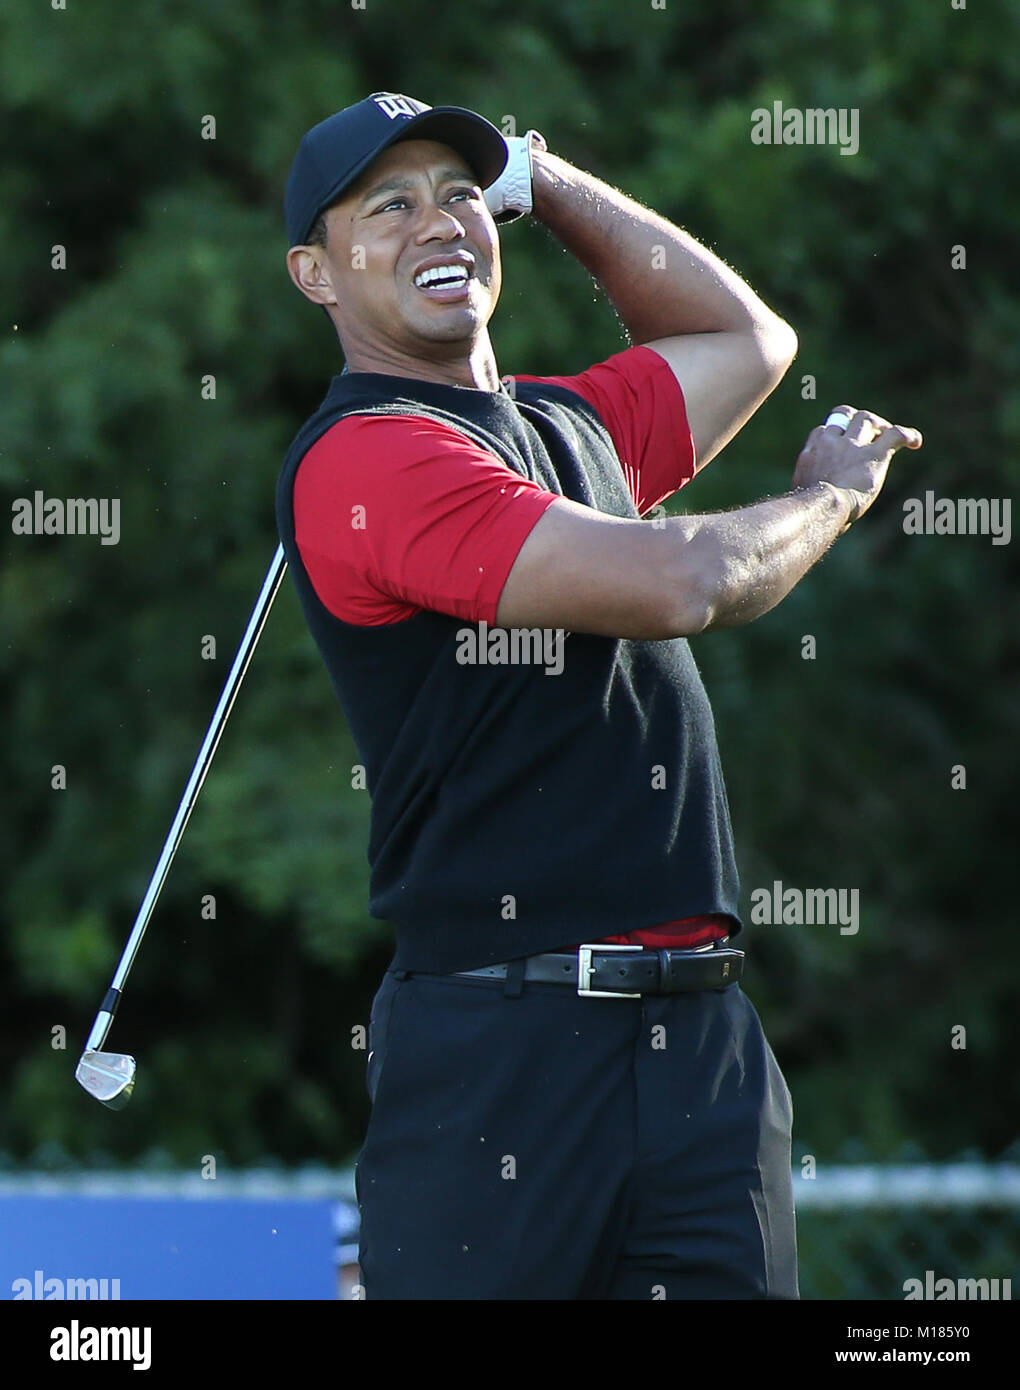 San Diego, USA. 28 janvier, 2018. Tiger Woods en regardant son tir au 11e trou à normale 3 lors de la ronde finale ouverte aux agriculteurs sur parcours sud au parcours de golf de Torrey Pines à San Diego, USA le 28 janvier 2018. Jevone Moore : csm Crédit/Alamy Live News Banque D'Images